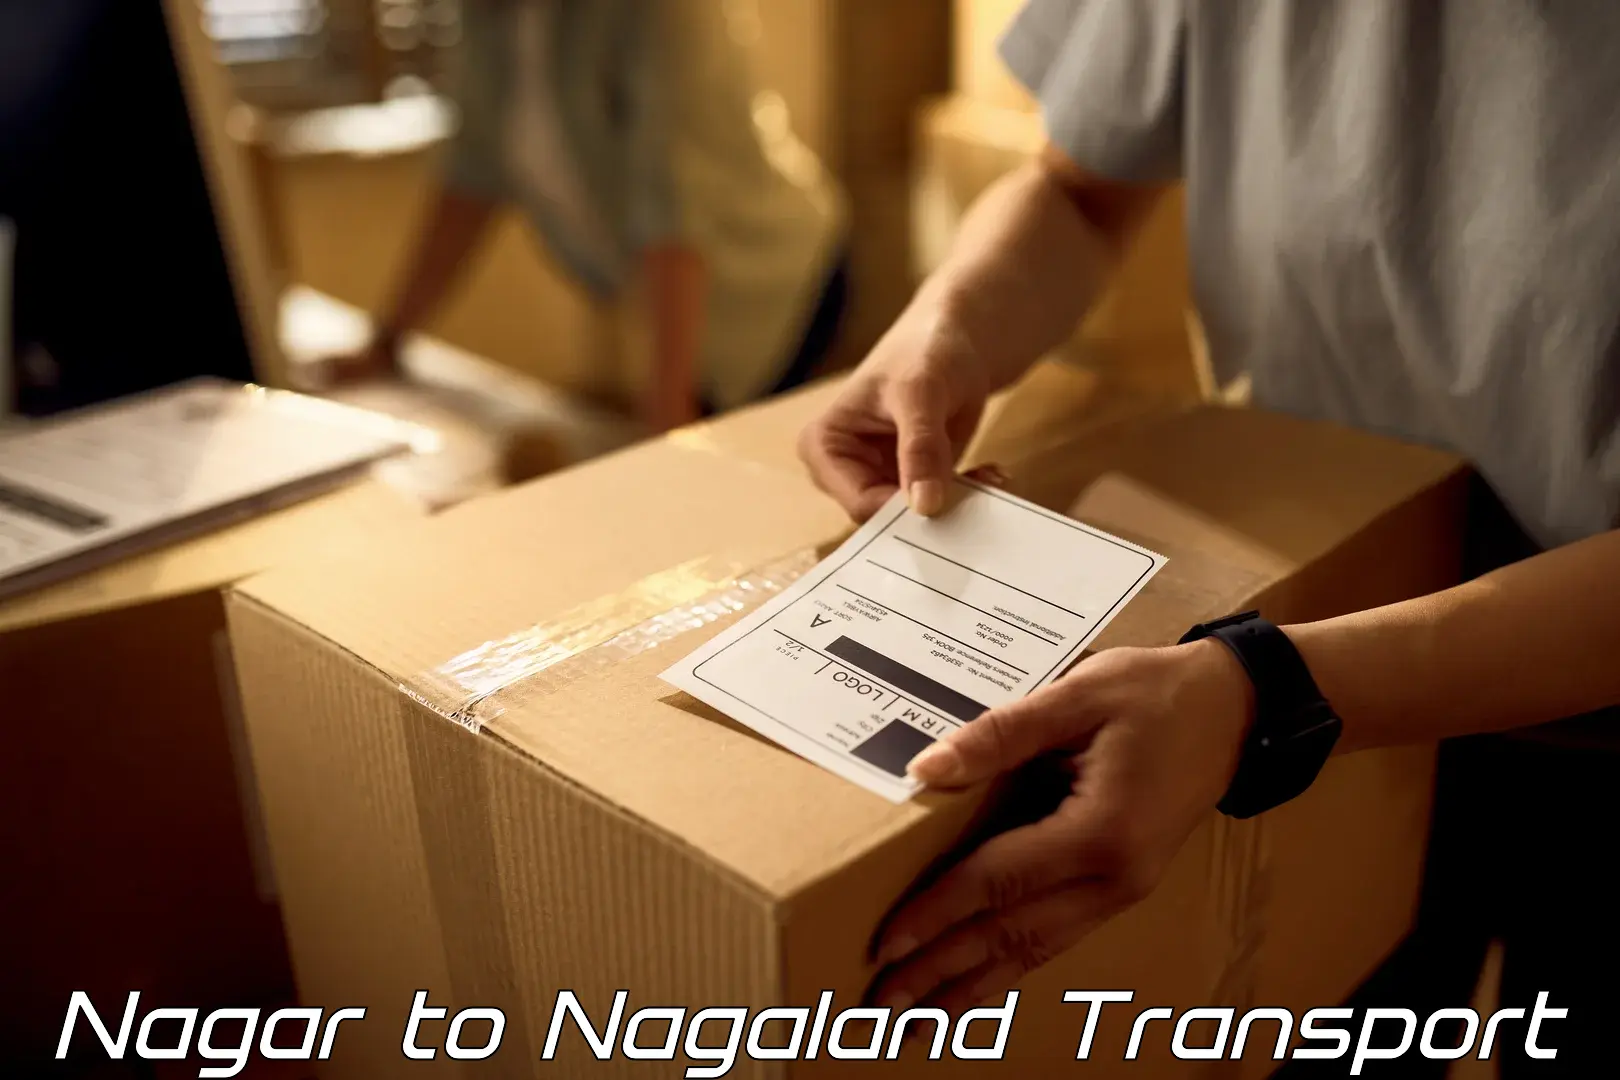 Online transport service Nagar to NIT Nagaland